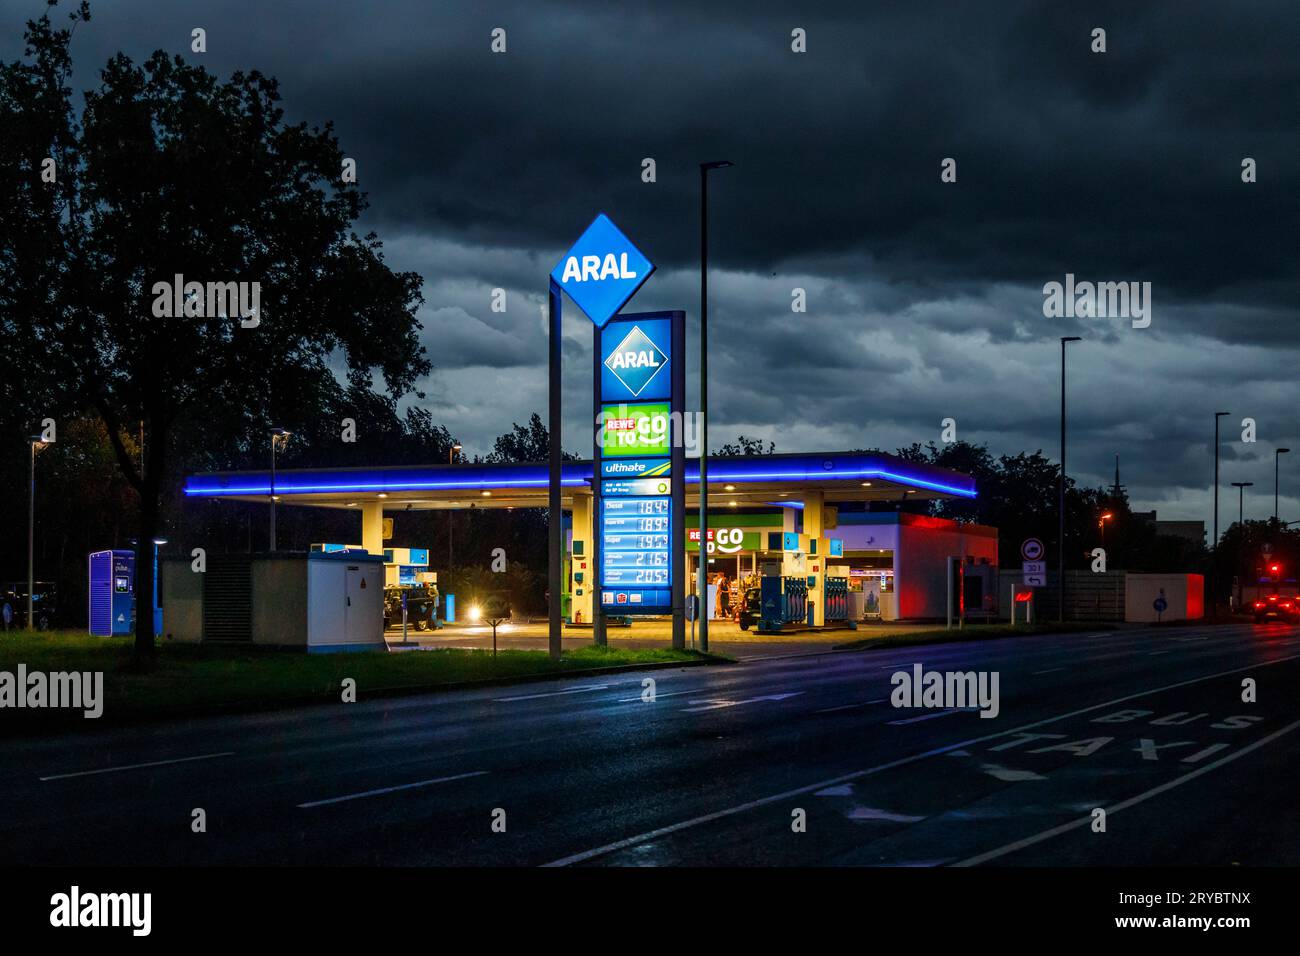 Gewitterfront über Düsseldorf, Aral Tankstelle *** Thunderstorm front over Düsseldorf, Aral gas station Stock Photo